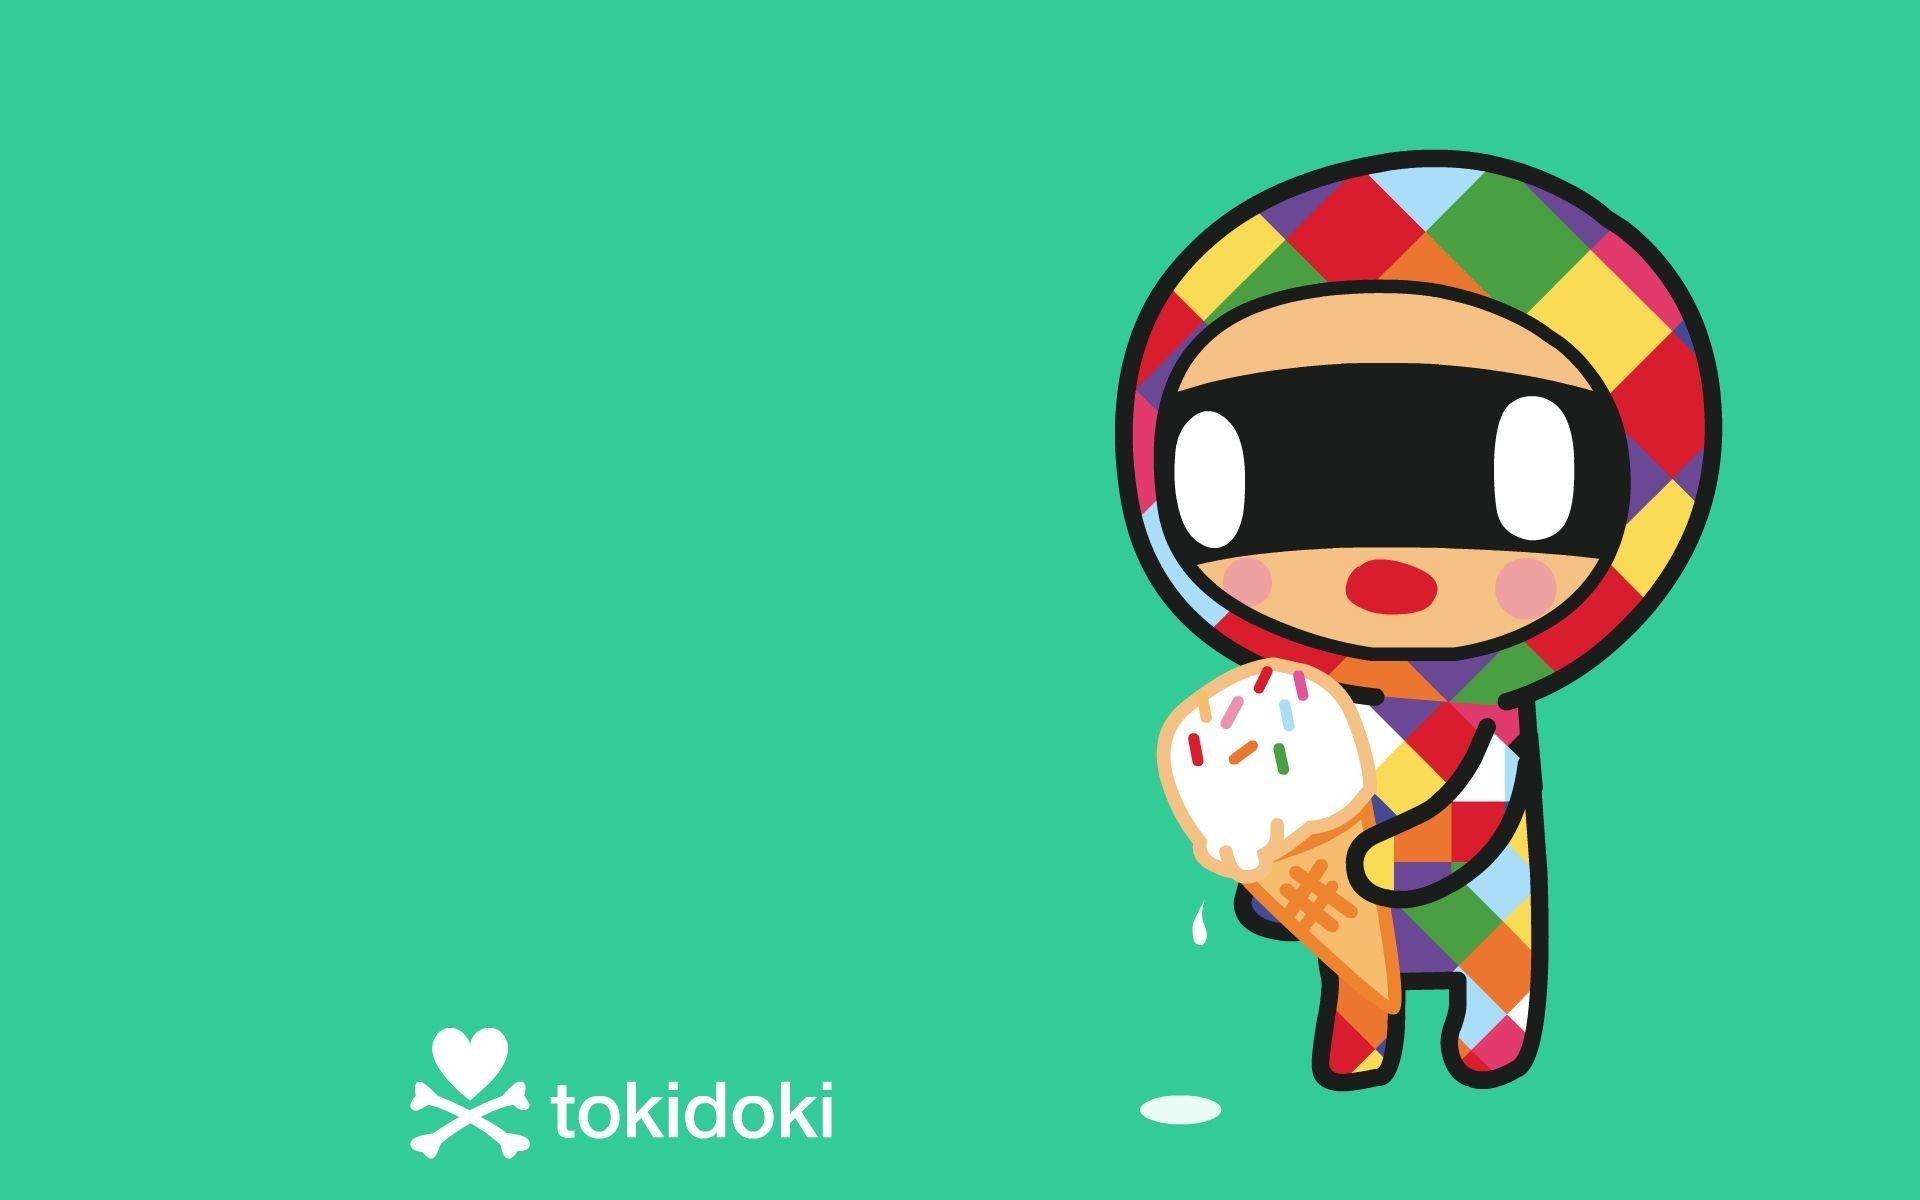 1920x1200 images about tokidoki on Pinterest Toki doki, iPhone 1310Ã810 Tokidoki  desktop wallpaper (